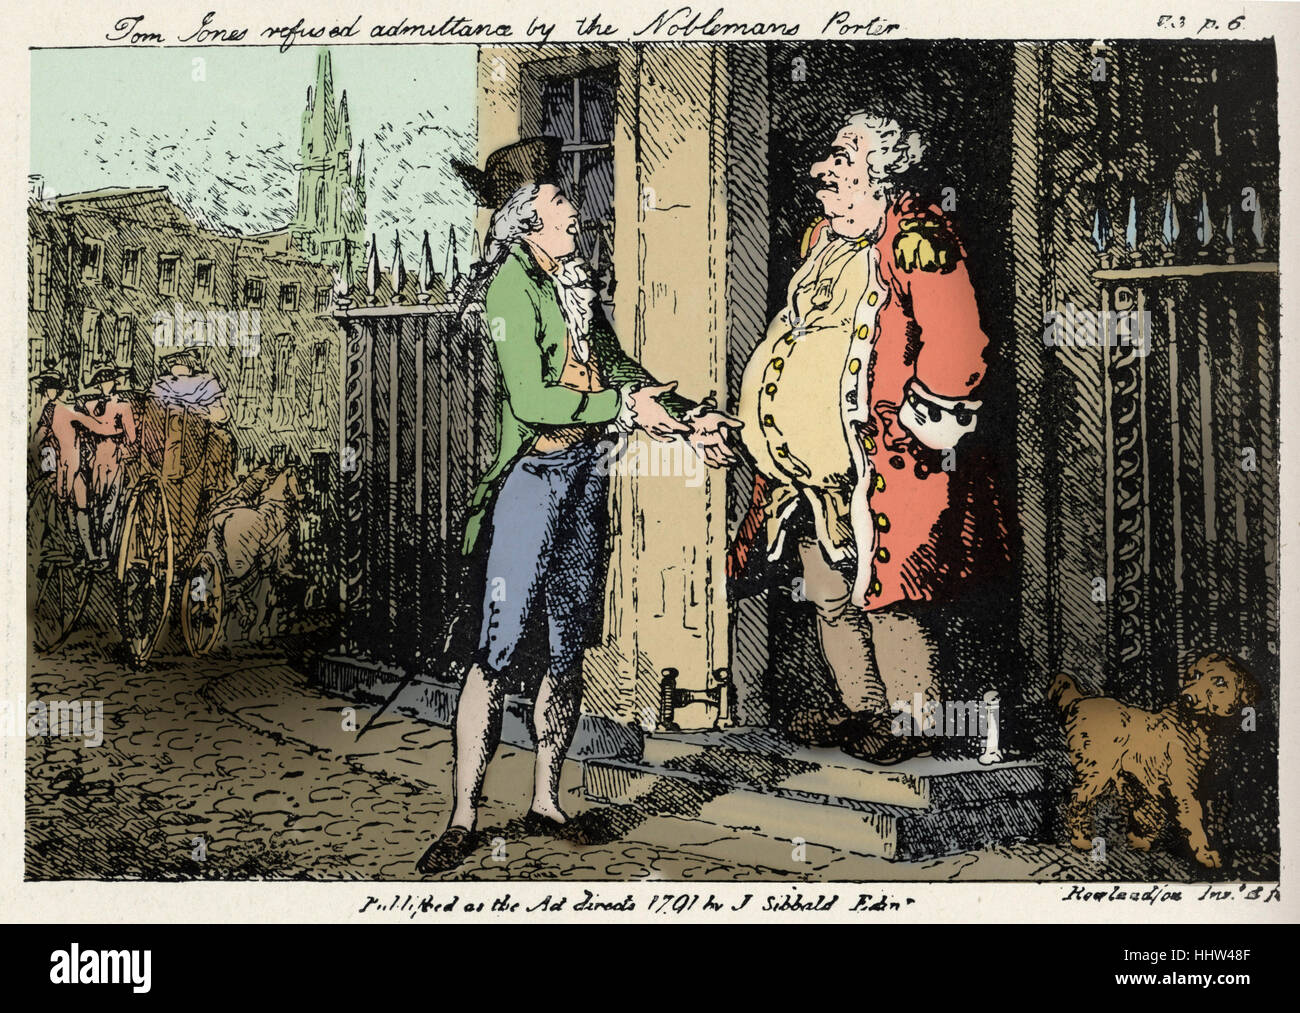 Henry Fielding - "Tom Jones" - Abbildung aus dem Buch von Thomas Rowlandson, 1791-Ausgabe. Bildunterschrift lautet: "Tom Jones verweigert Stockfoto